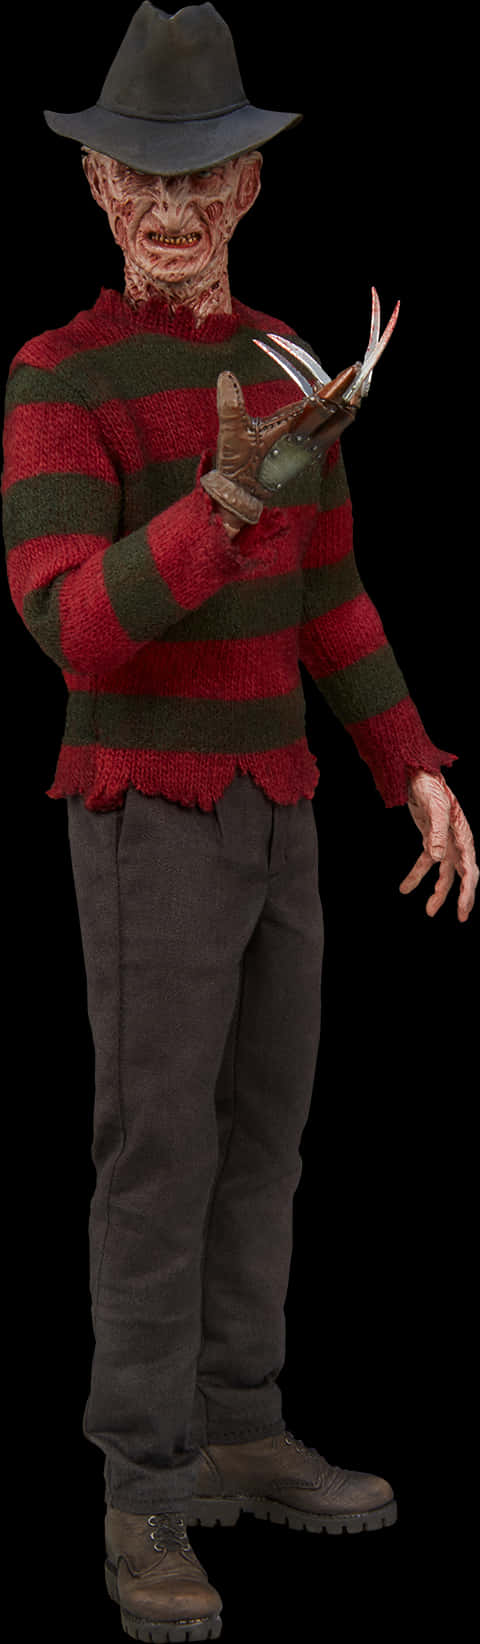 A Man In A Striped Sweater